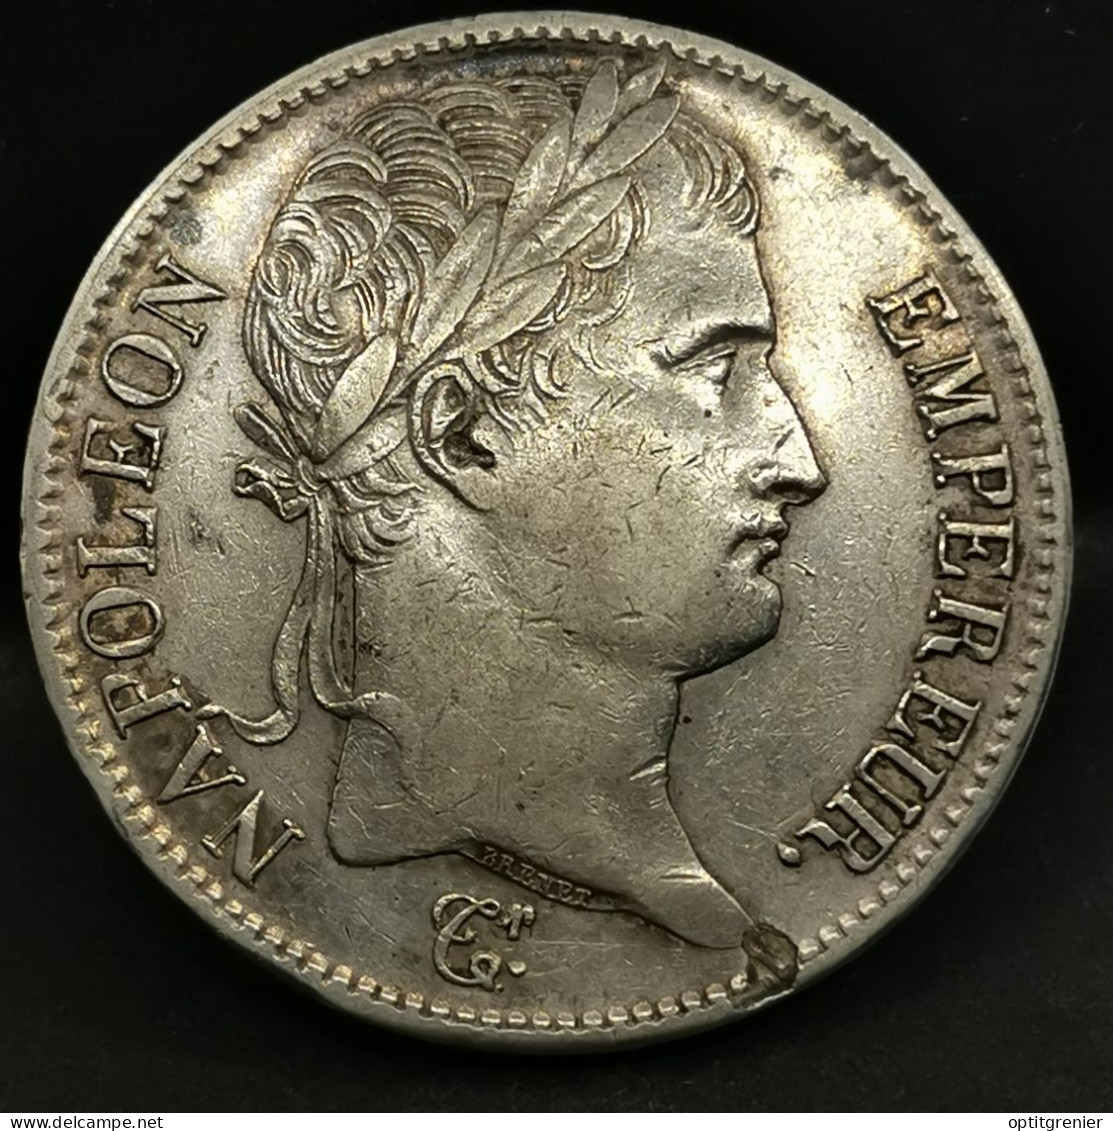 5 FRANCS ARGENT 1814 Q PERPIGNAN NAPOLEON TETE LAUREE  366517 Ex. EMPIRE FRANCAIS SILVER - 5 Francs